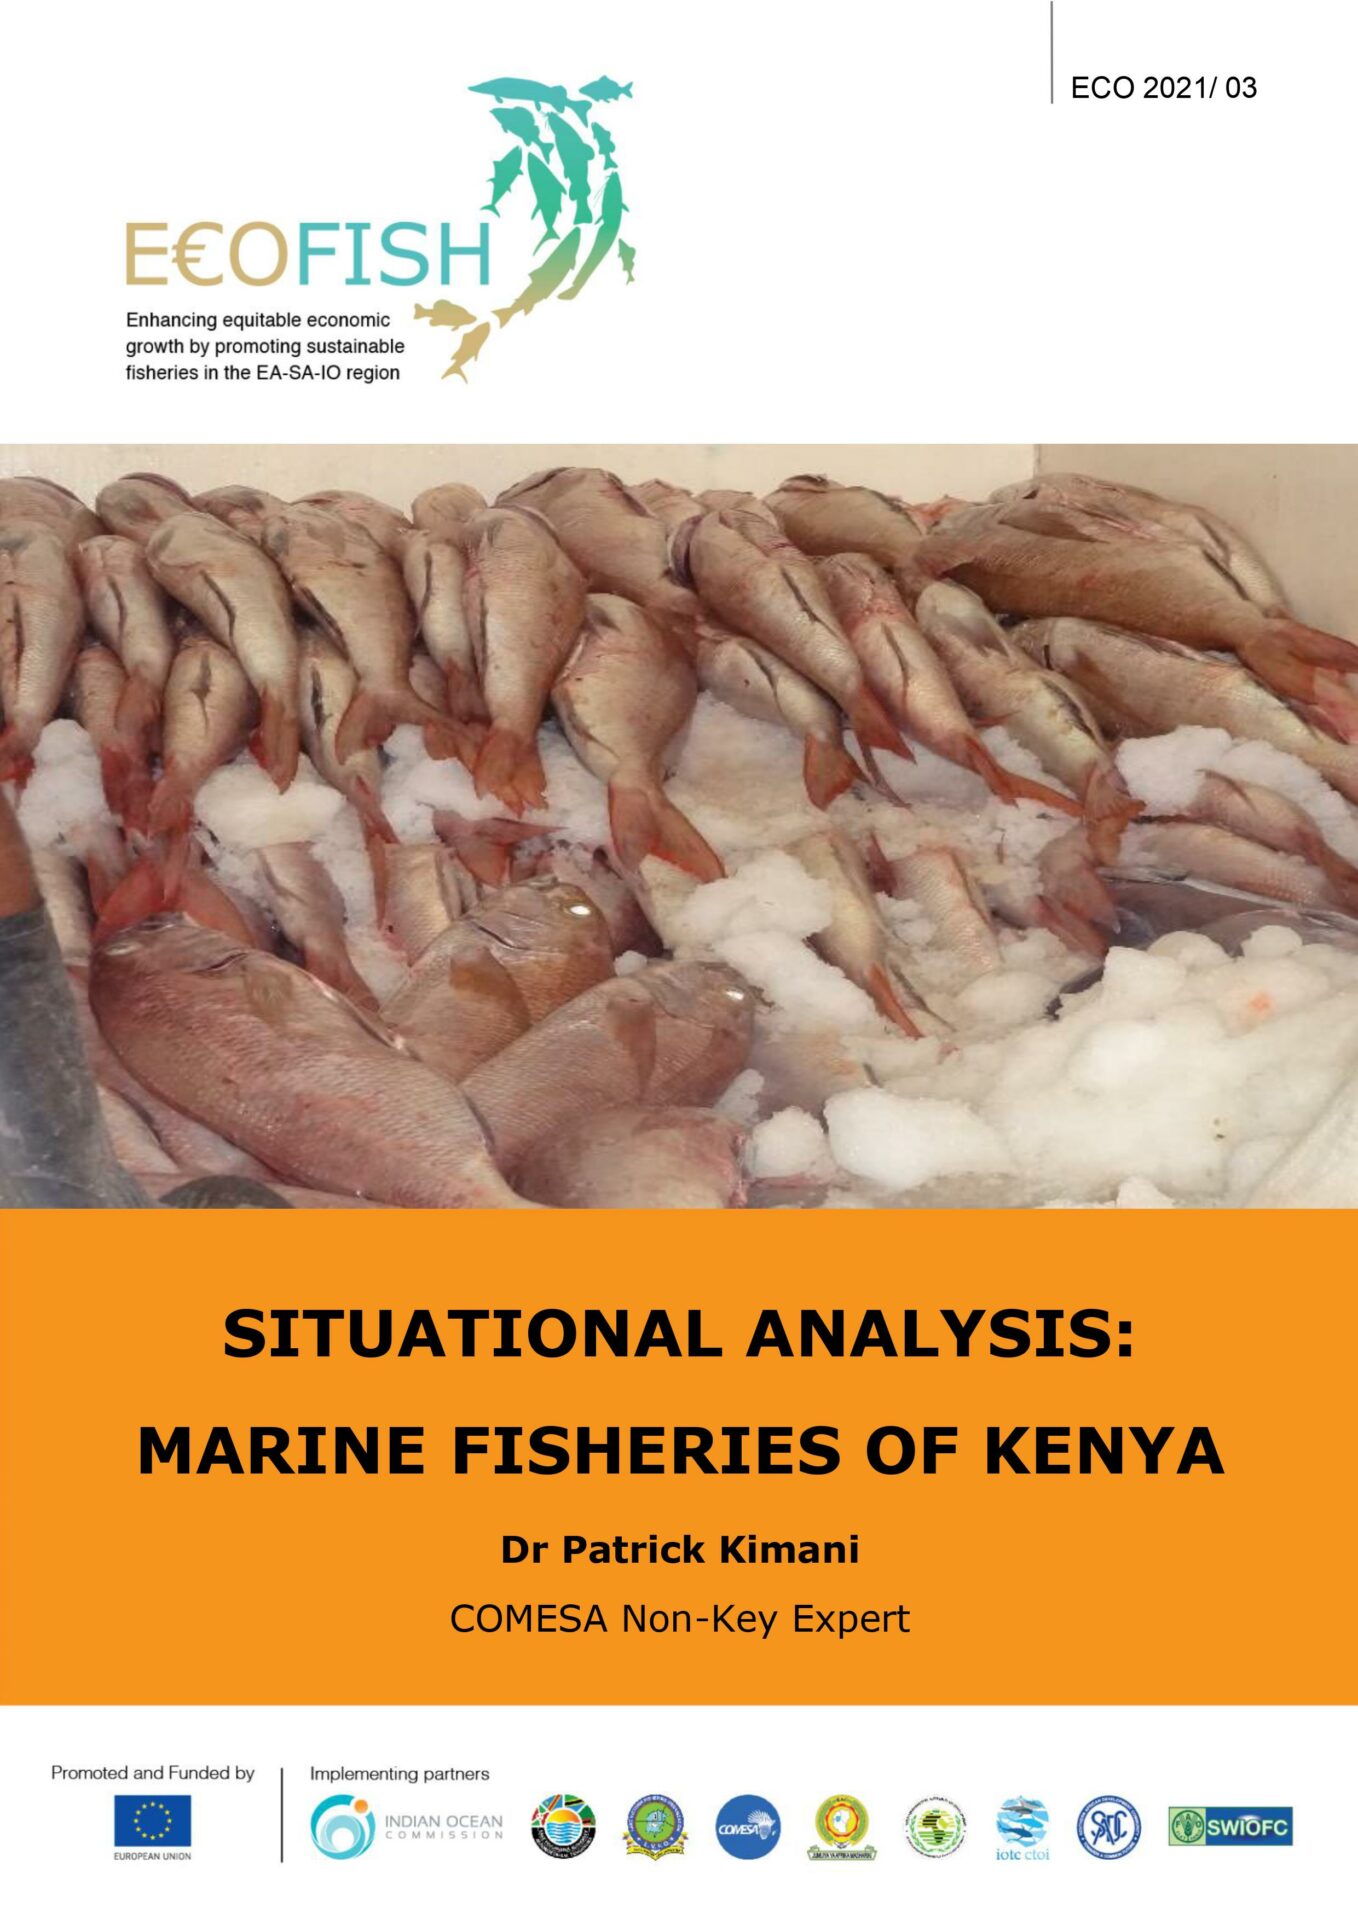 marine fisheries of kenya